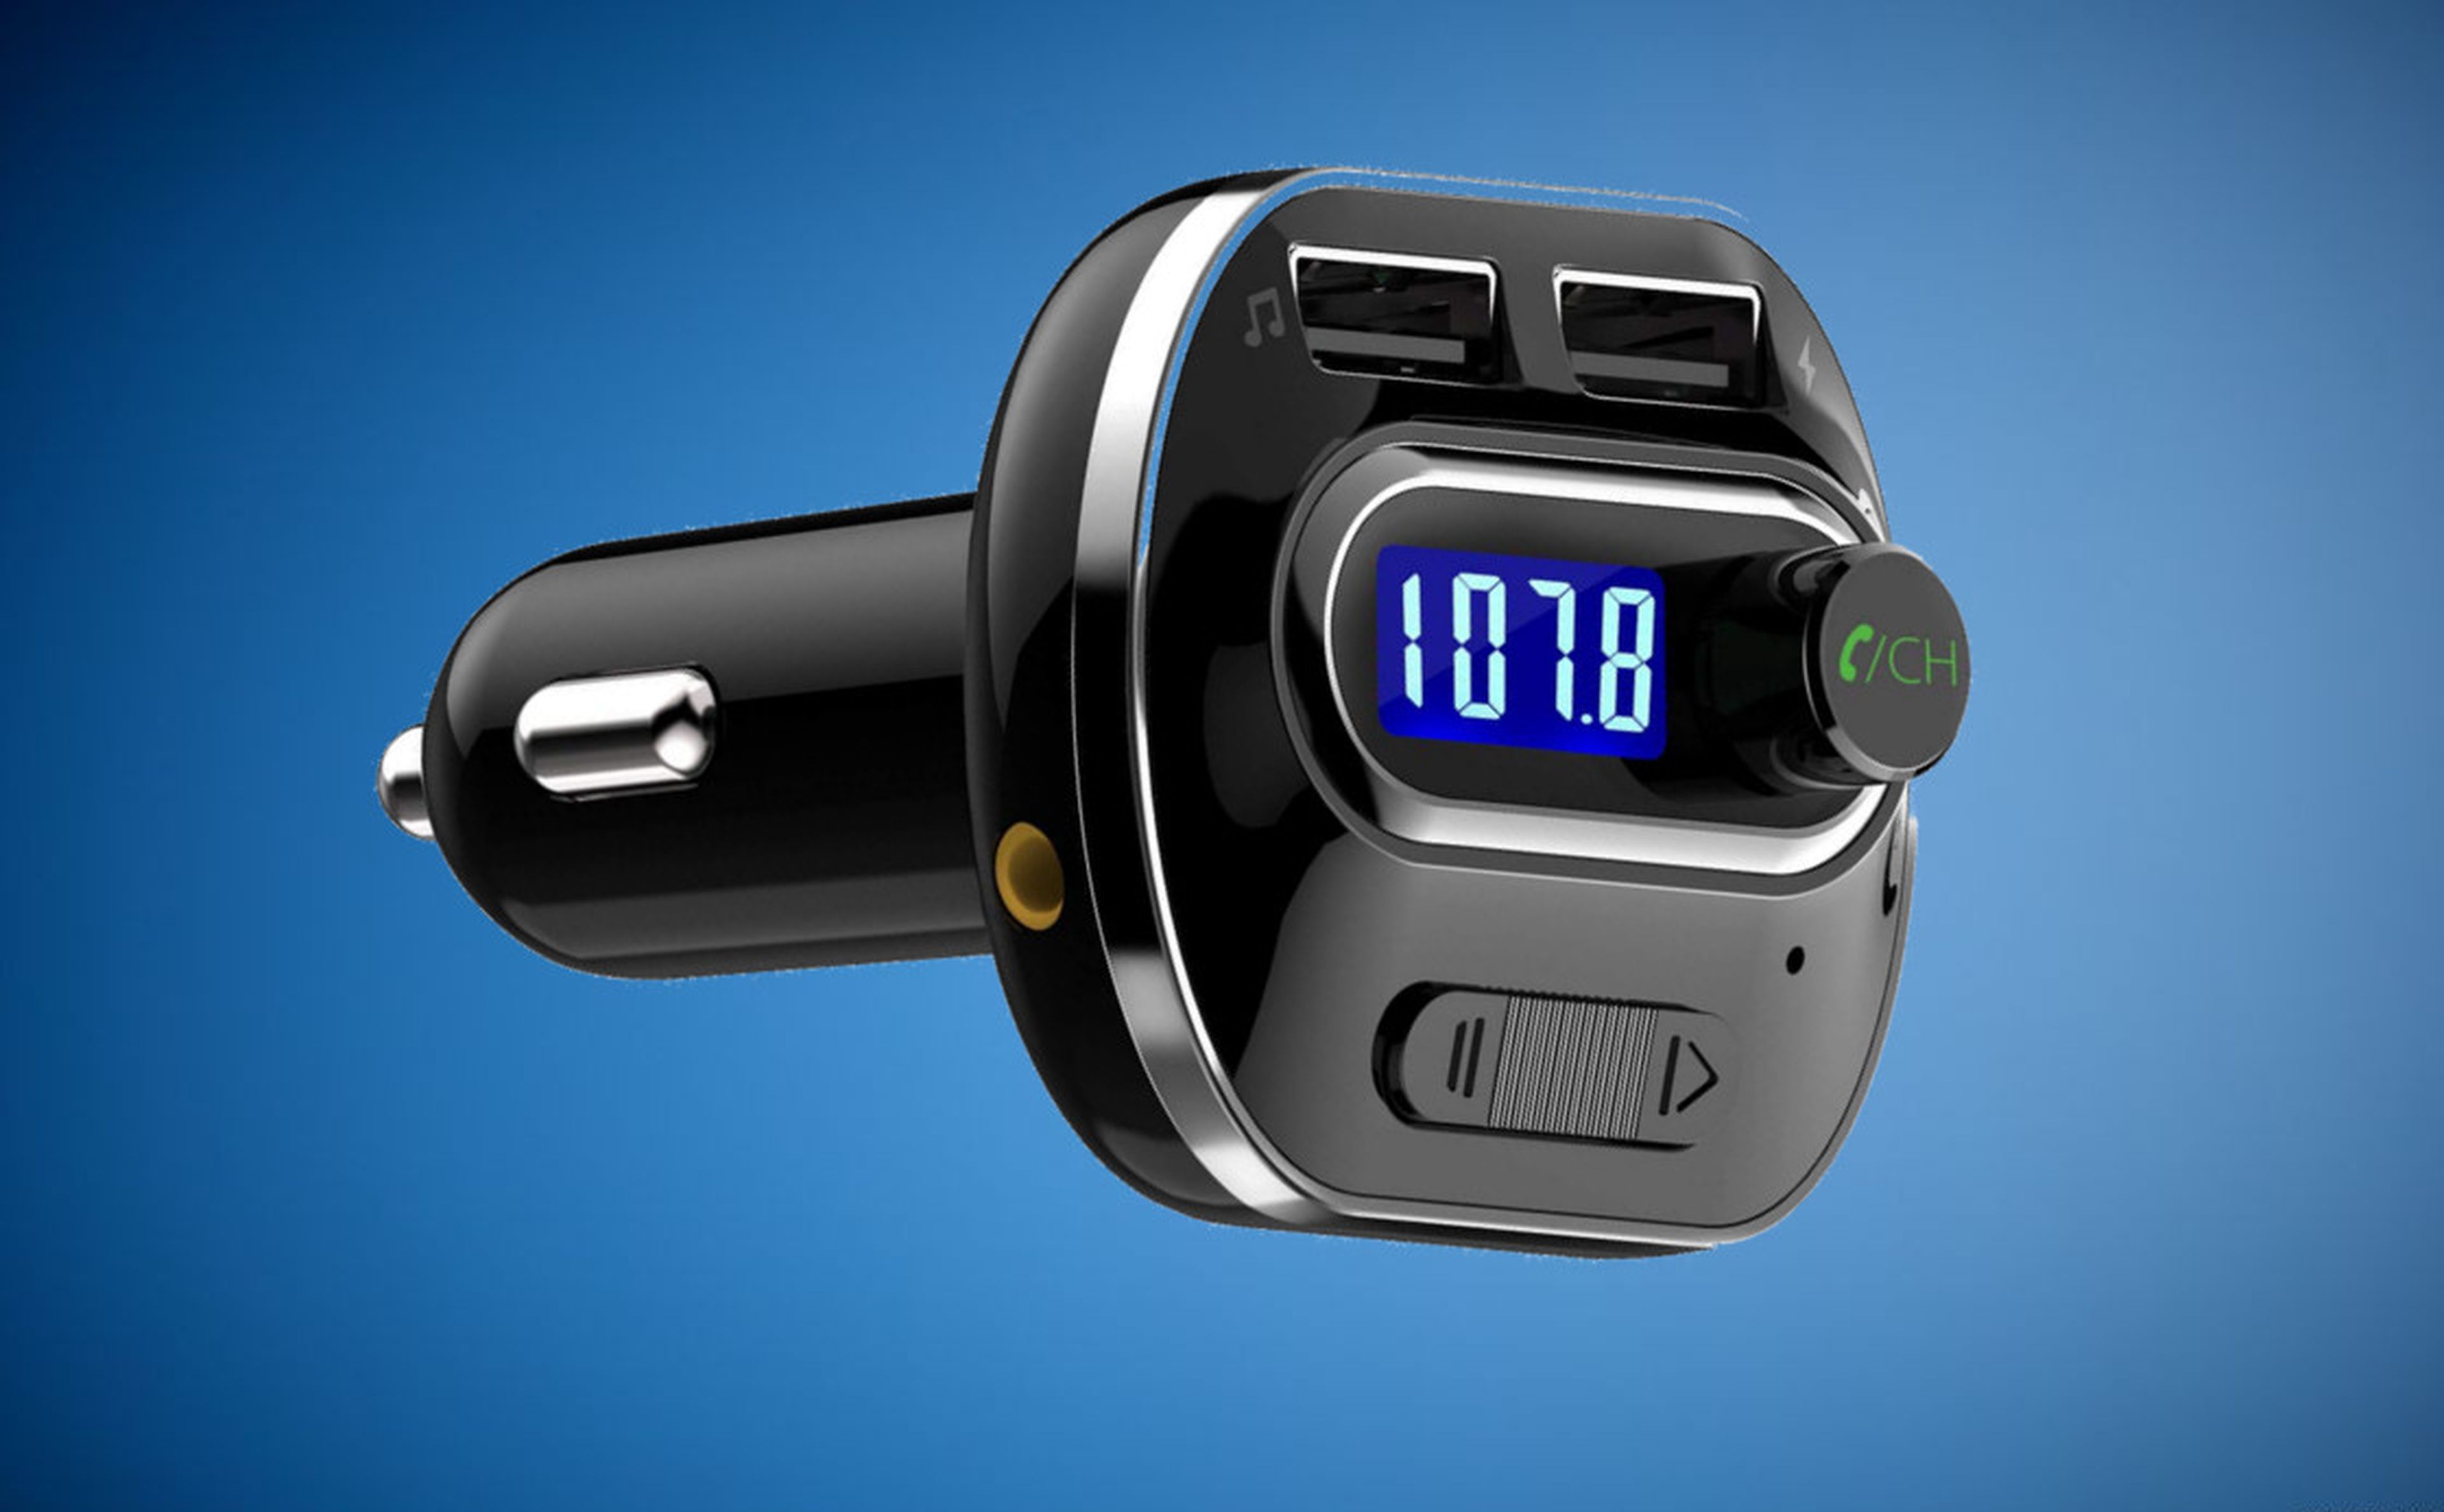 BLUETOOTH  Añade Bluetooth a la radio del coche por menos de 4 euros Añade  Bluetooth a la radio del coche por menos de 4 euros - Meristation